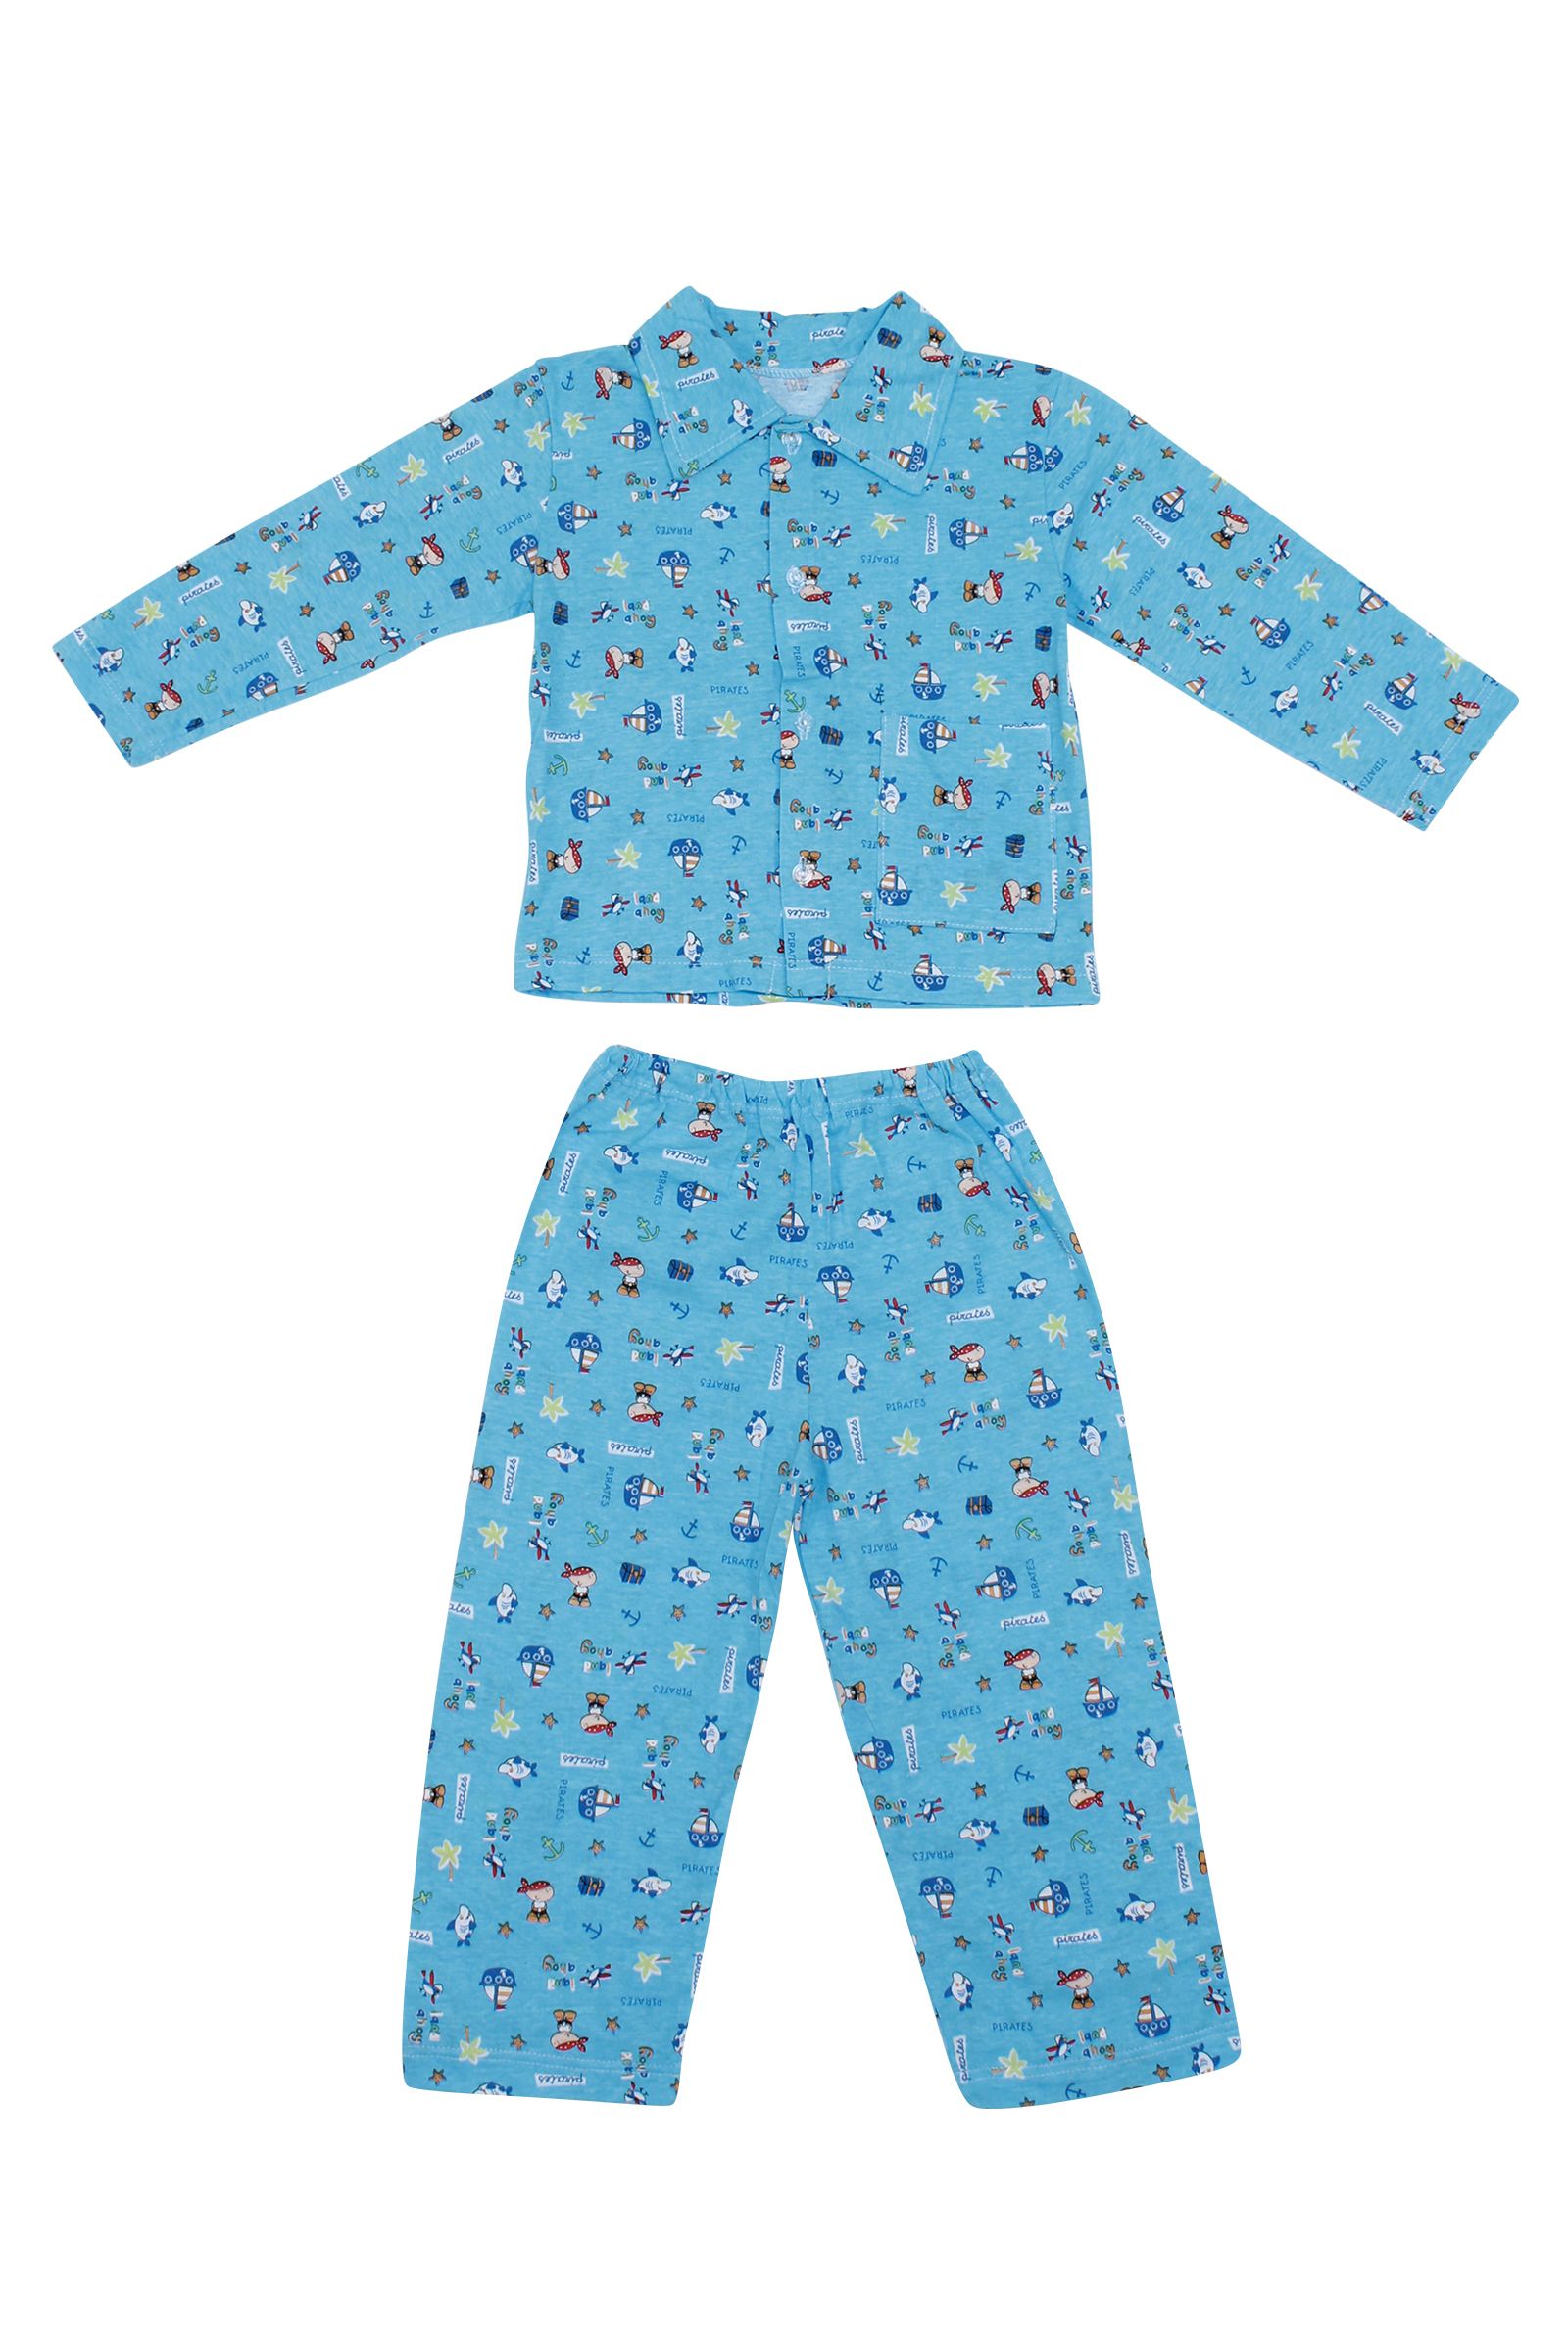 Пижама-ПЖ02-520 оптом от производителя детской одежды 'Алёна'